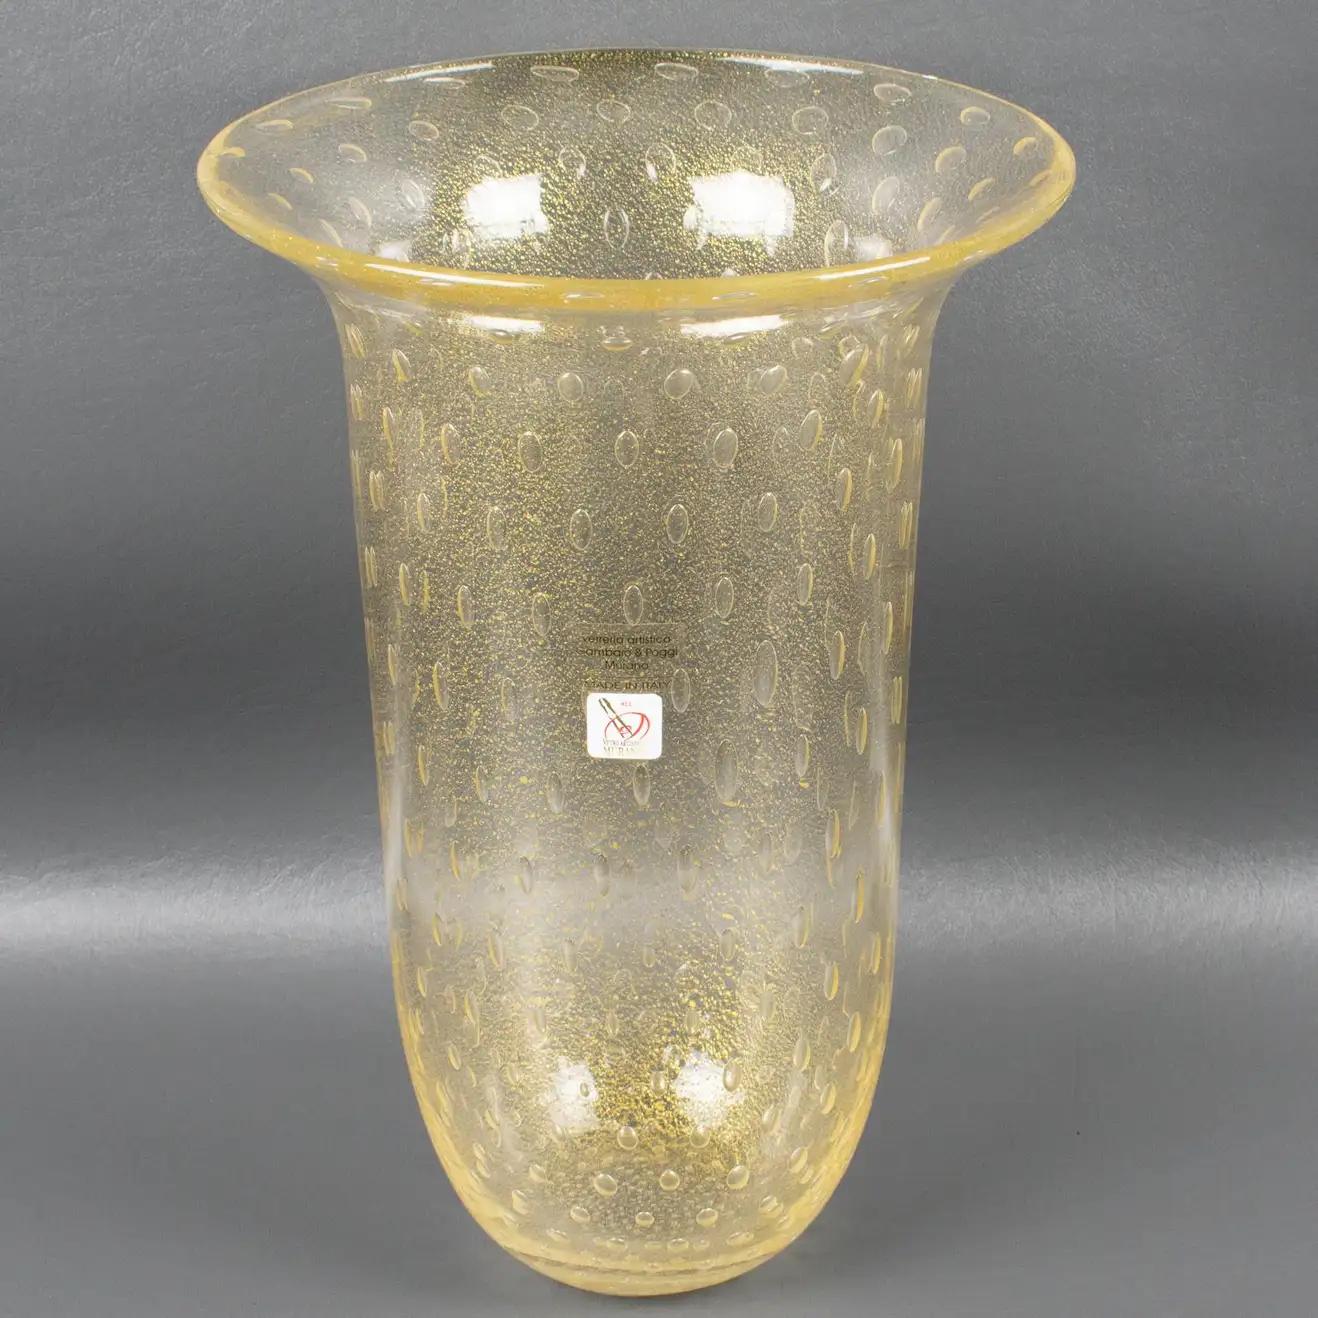 20th Century Italian Art Glass Murano Vase Gold Flakes and Bubbles by Gambaro & Poggi For Sale